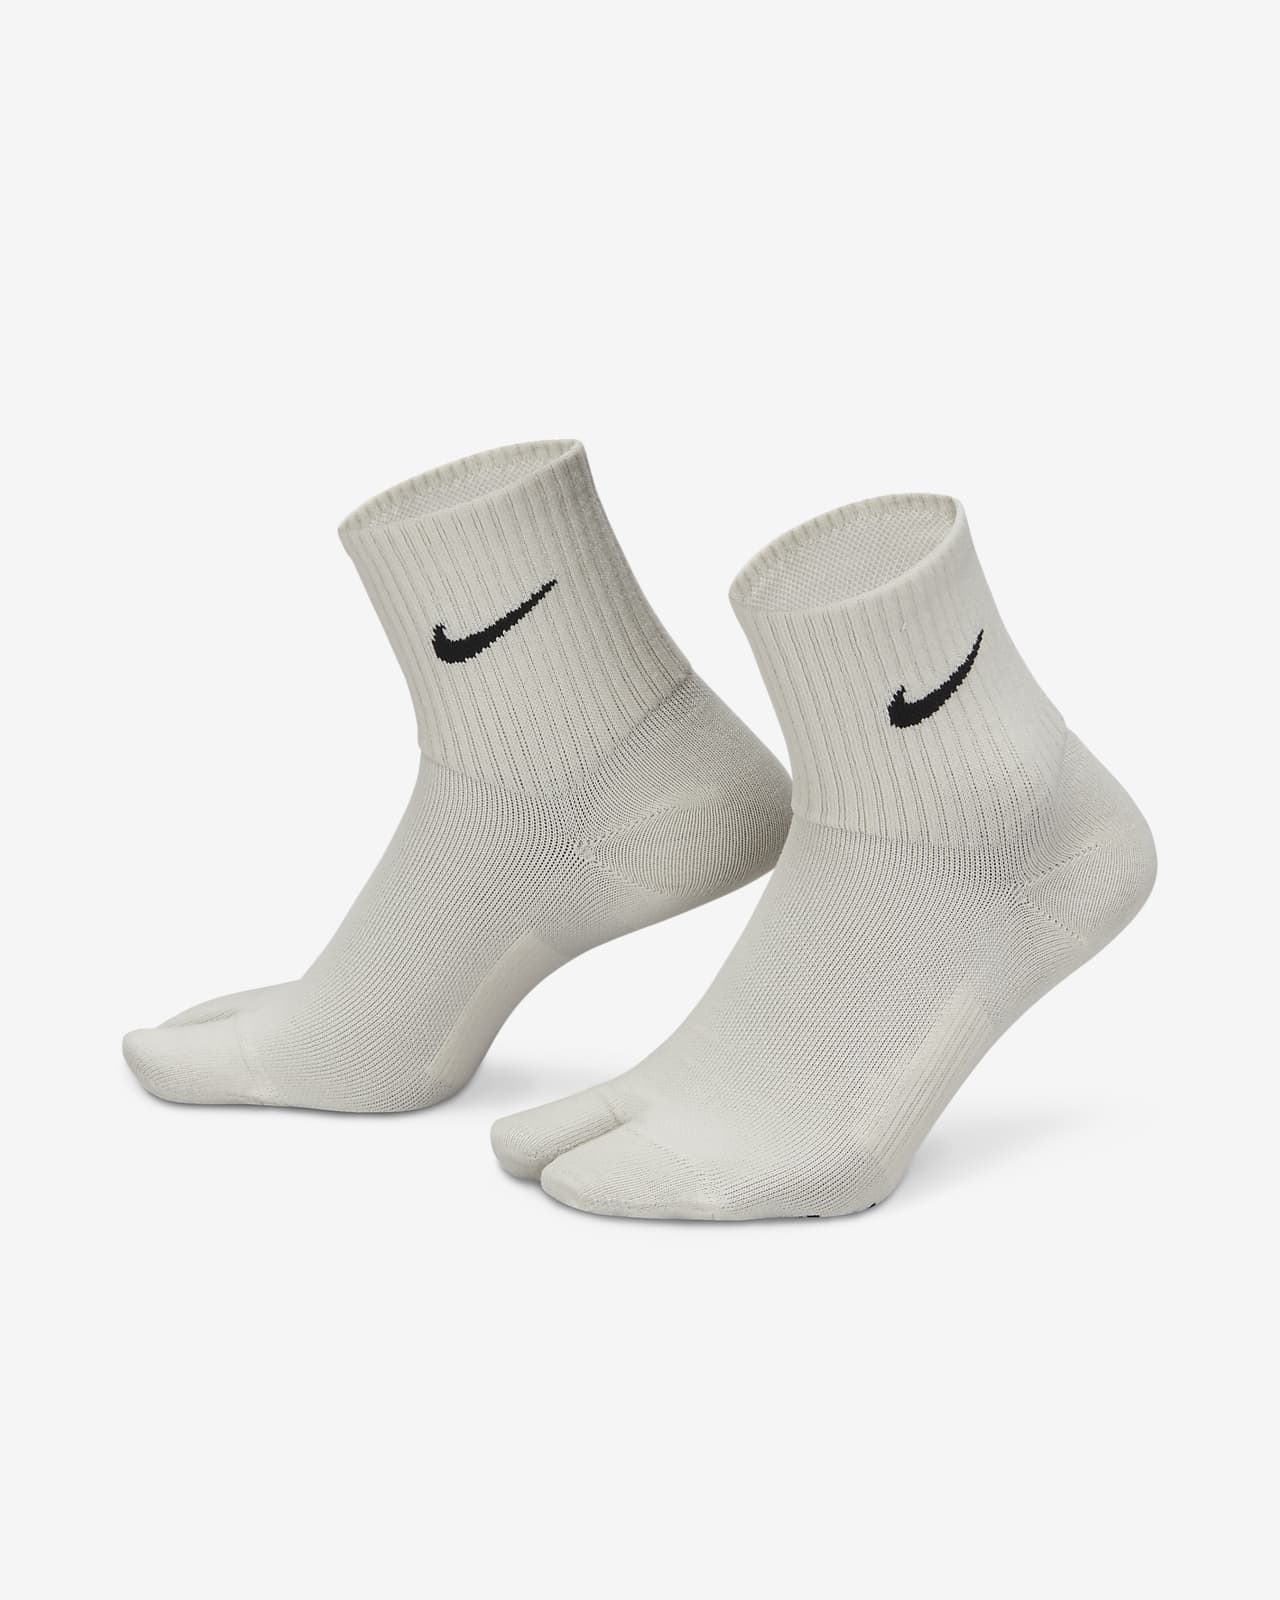 Nike Plus Calcetines tobilleros ligeros con separación para los dedos. Nike ES